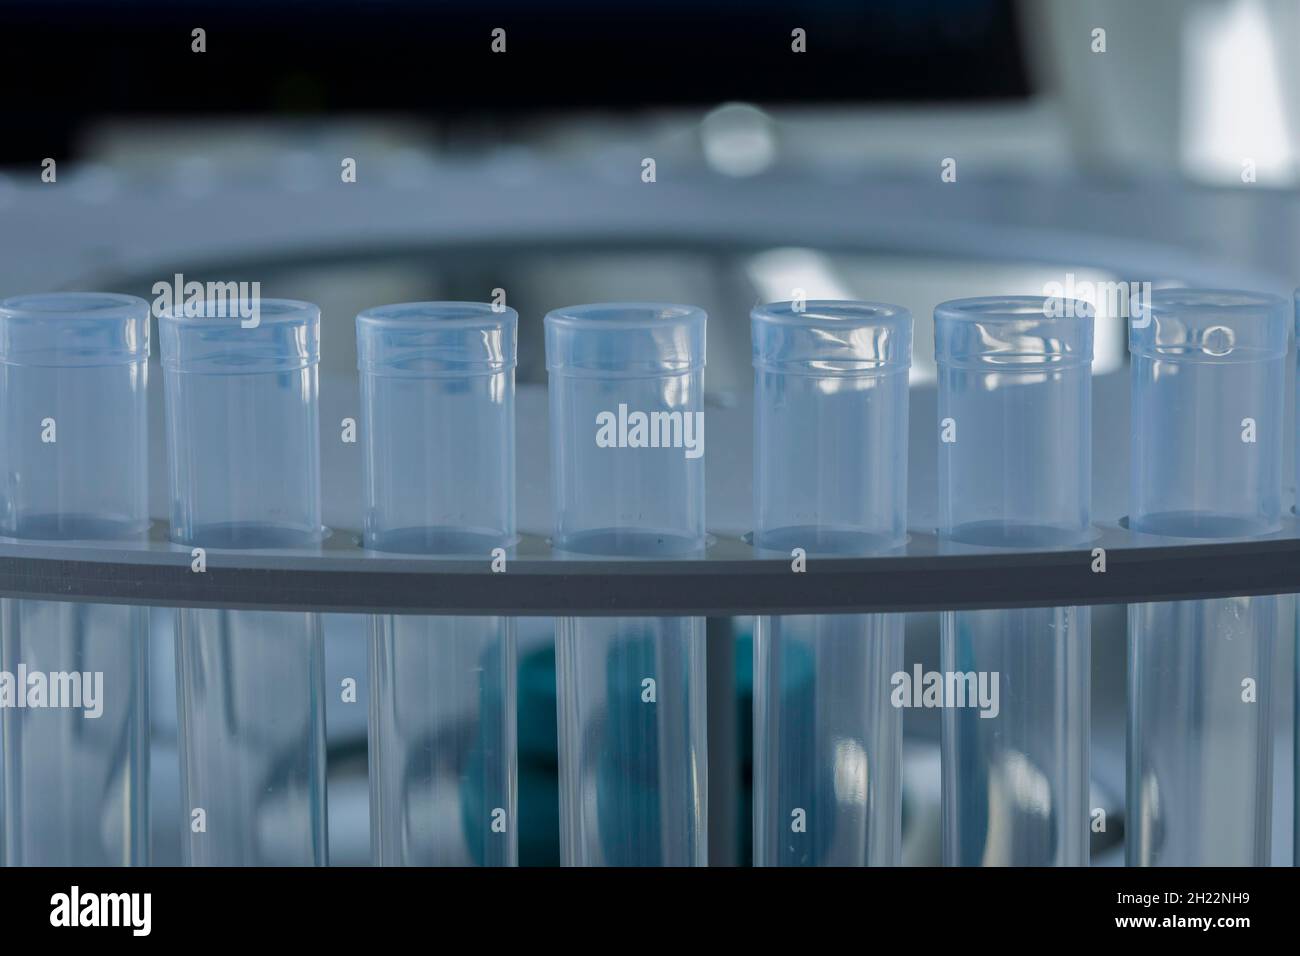 Analisi chimica di laboratorio con provette e apparecchiature di laboratorio, Friburgo, Baden-Wuerttemberg, Germania Foto Stock